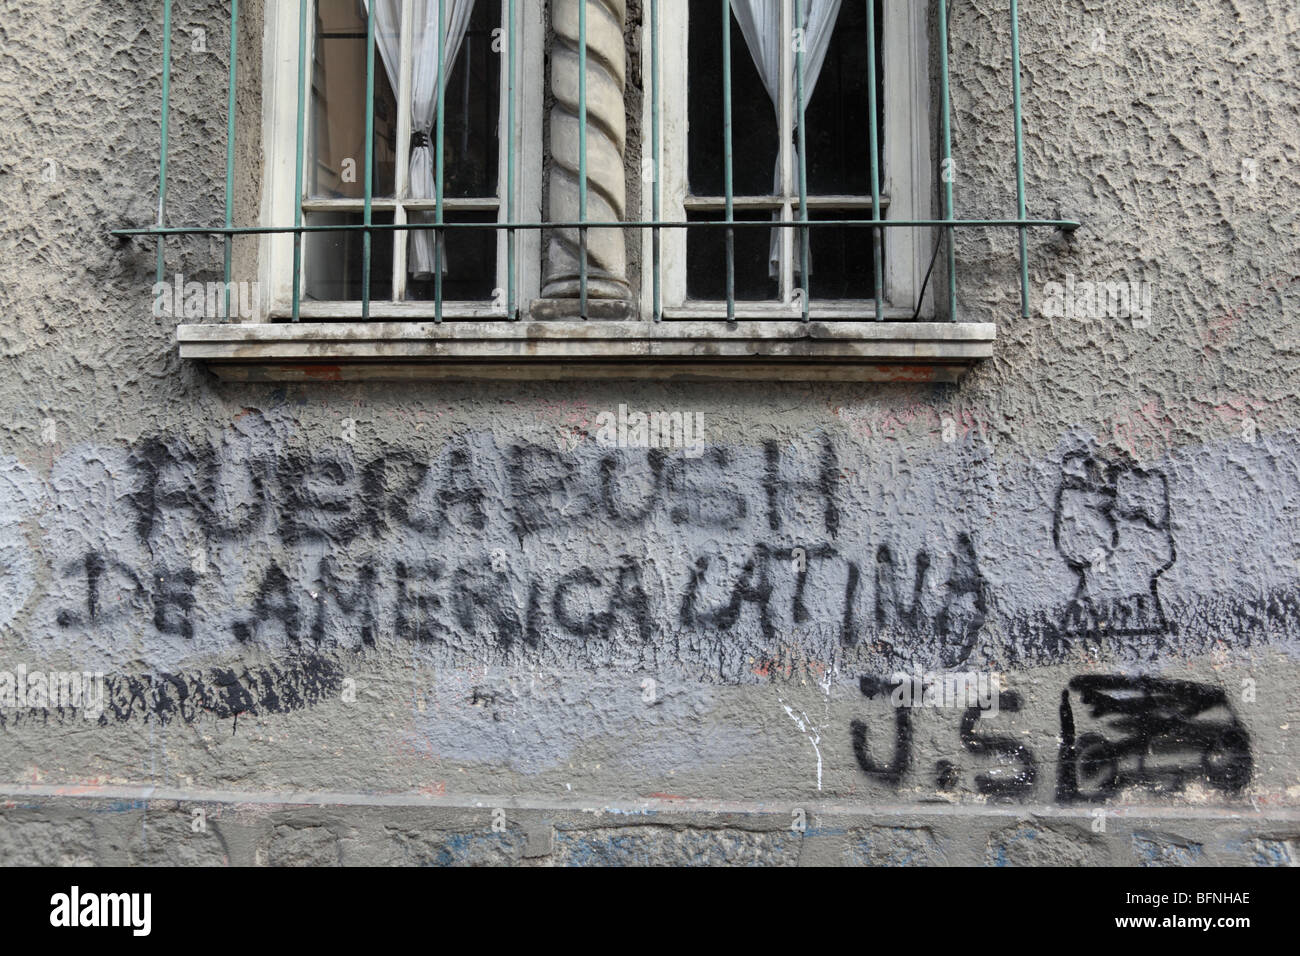 Bush hors de l'Amérique Latine / Fuera Bush de America Latina graffiti sur mur, La Paz , Bolivie Banque D'Images